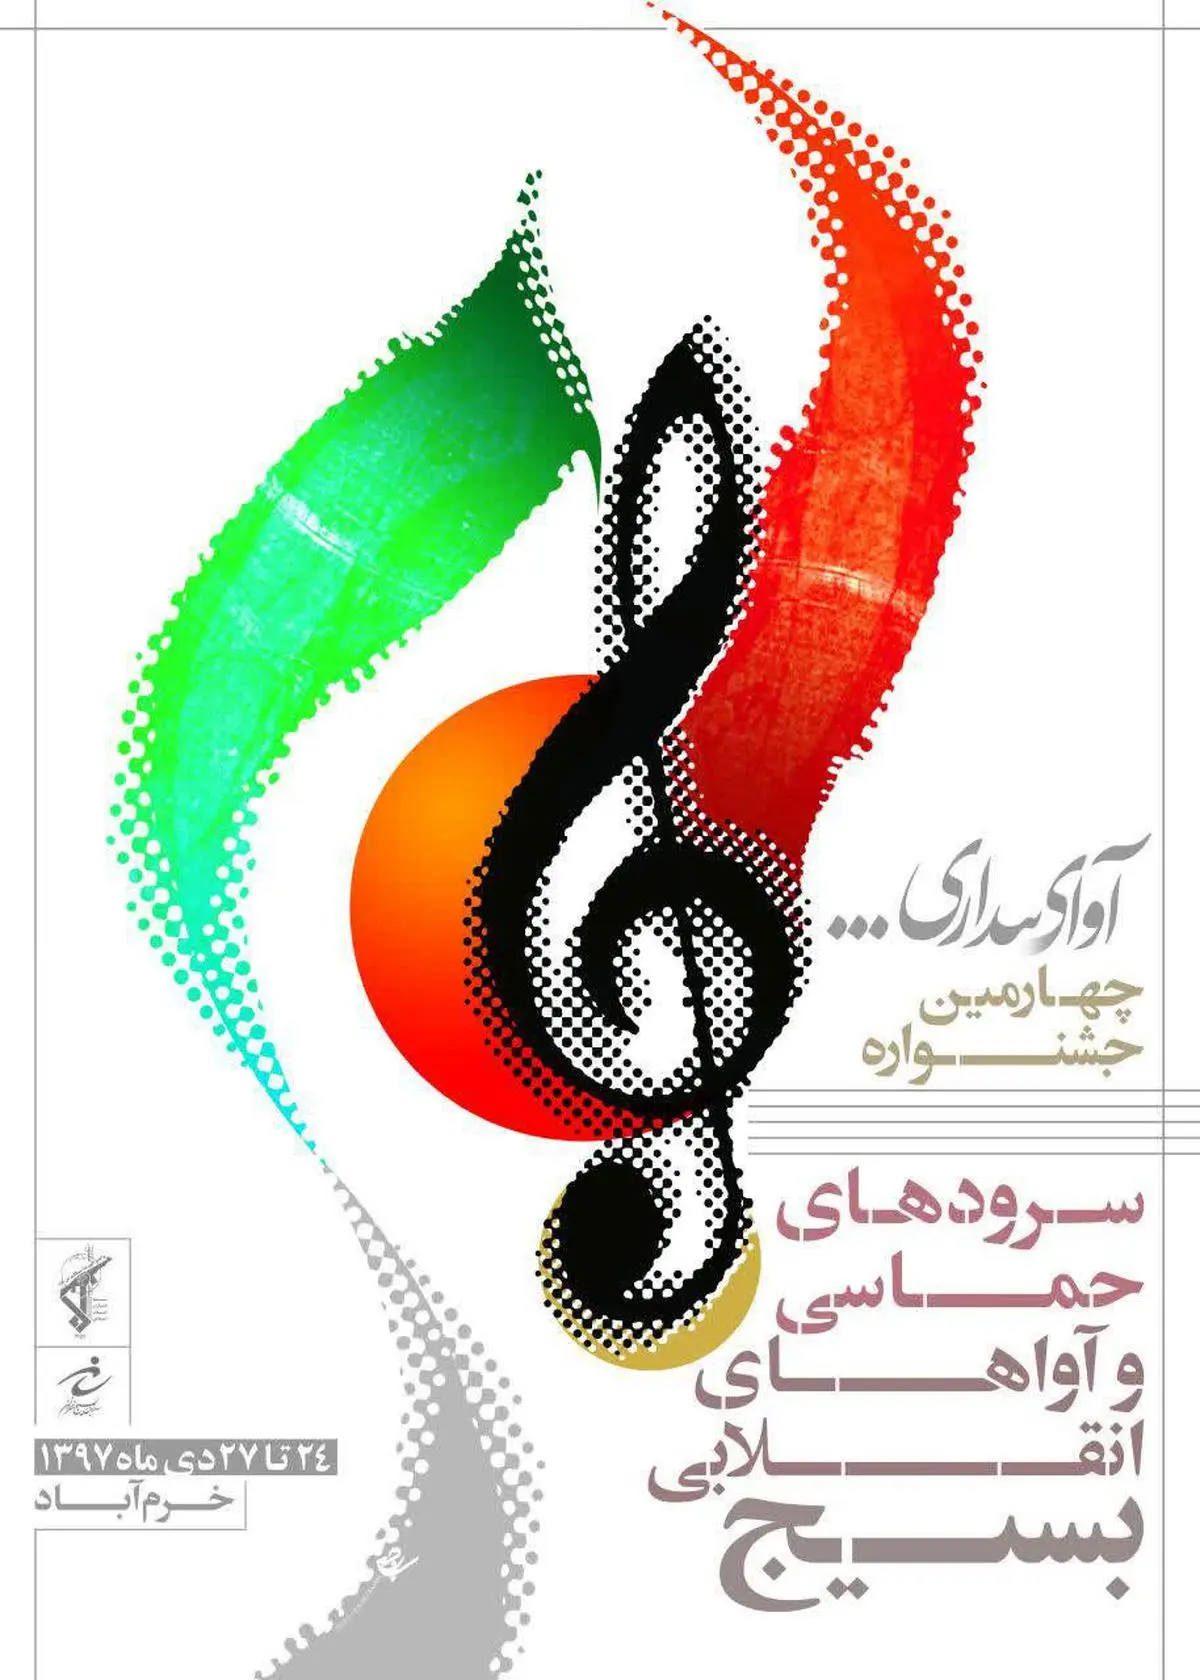 جشمید جم : غرب ایران ما در موسیقی و سازهای حماسی است/ بسیج انتشار آلبوم‌های موسیقی را حمایت می‌کند